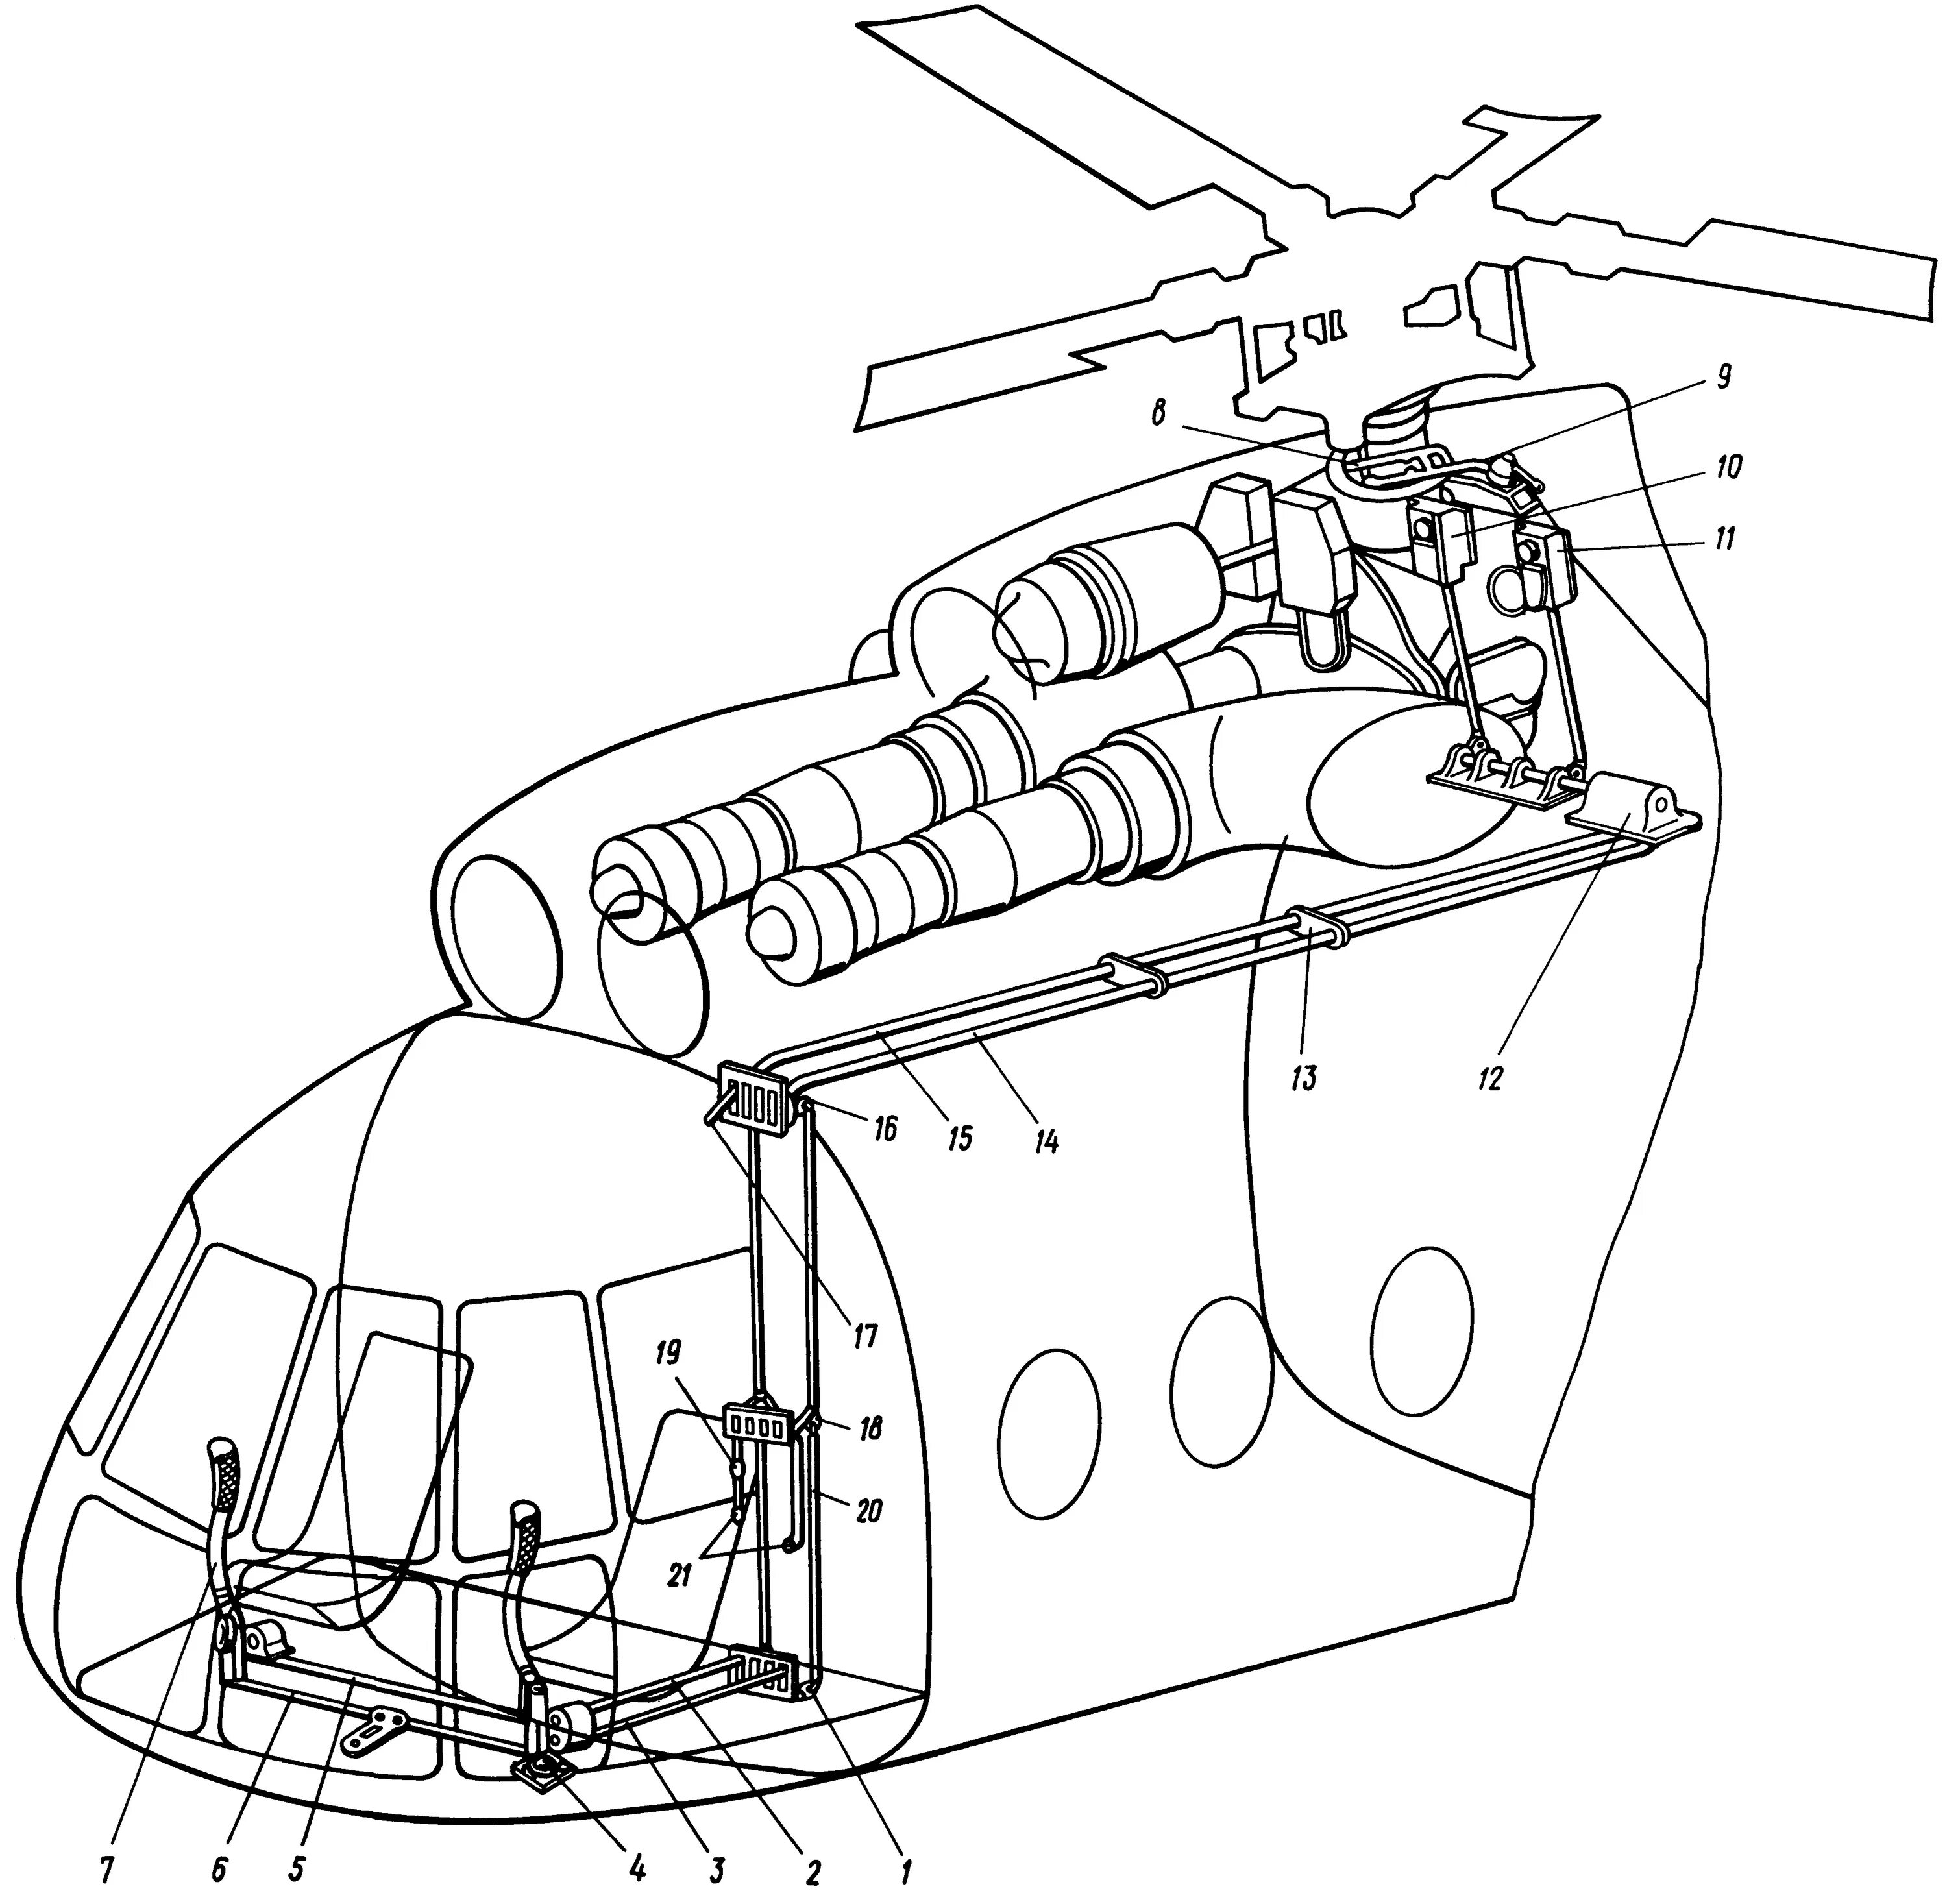 Системы вертолета ми 8. Система управления вертолета ми-8. Топливная система вертолета ми-8амт. Гидросистема вертолета ми-8. Конструкция вертолета ми-8.